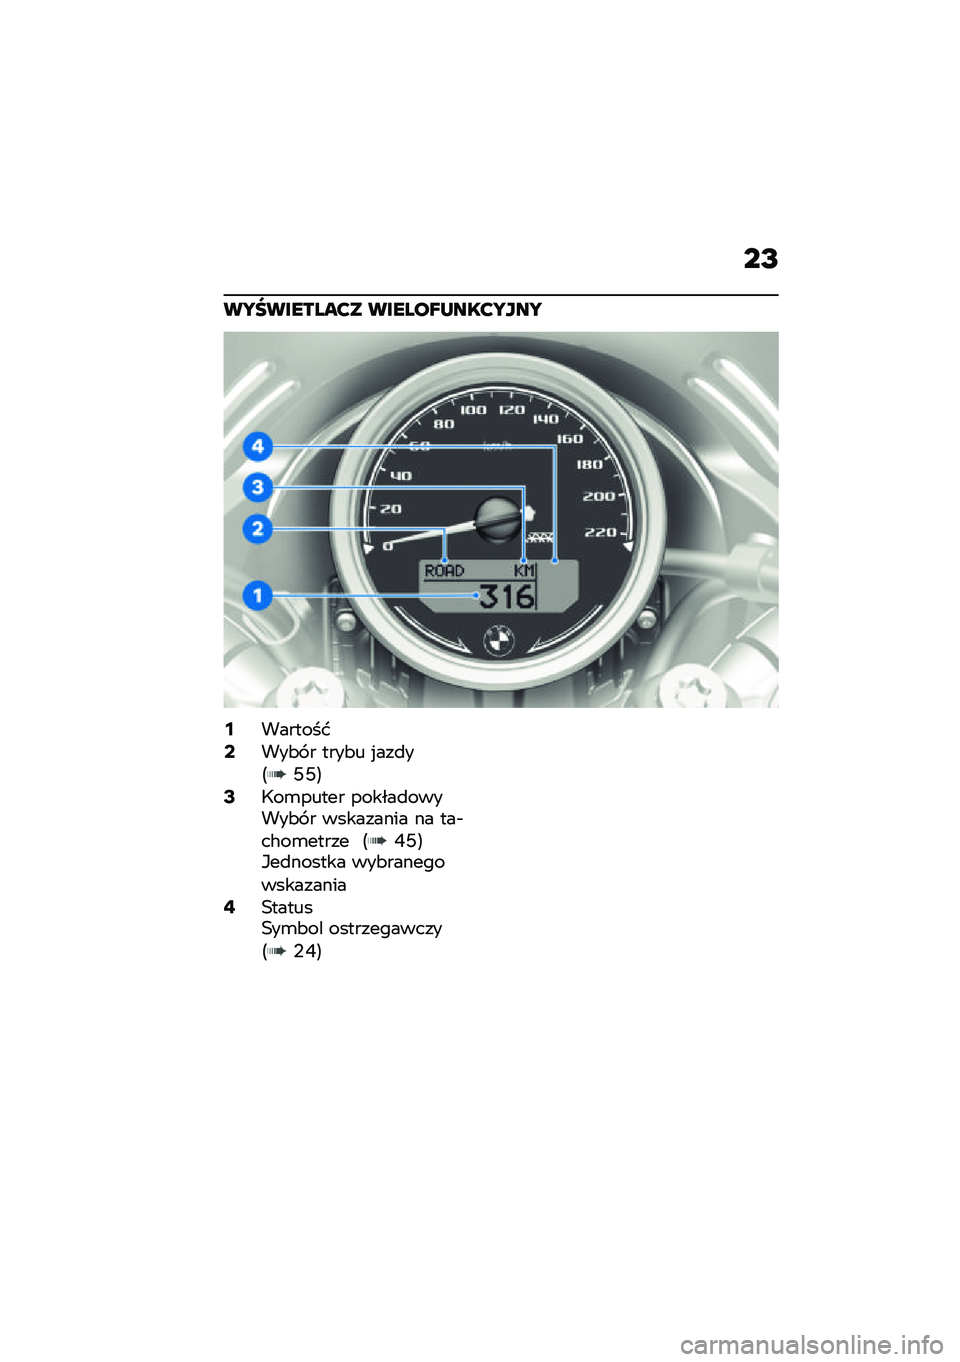 BMW MOTORRAD R NINE T URVAN G/S 2021  Instrukcja obsługi (in Polish) ��I
��S�V�������?� ������Z�L���?�S���S
�6��������8���&� � ����&� �%���
��<�S�S�=�:�;��\b����� ������
������&� � ��������� �� ���$��#�